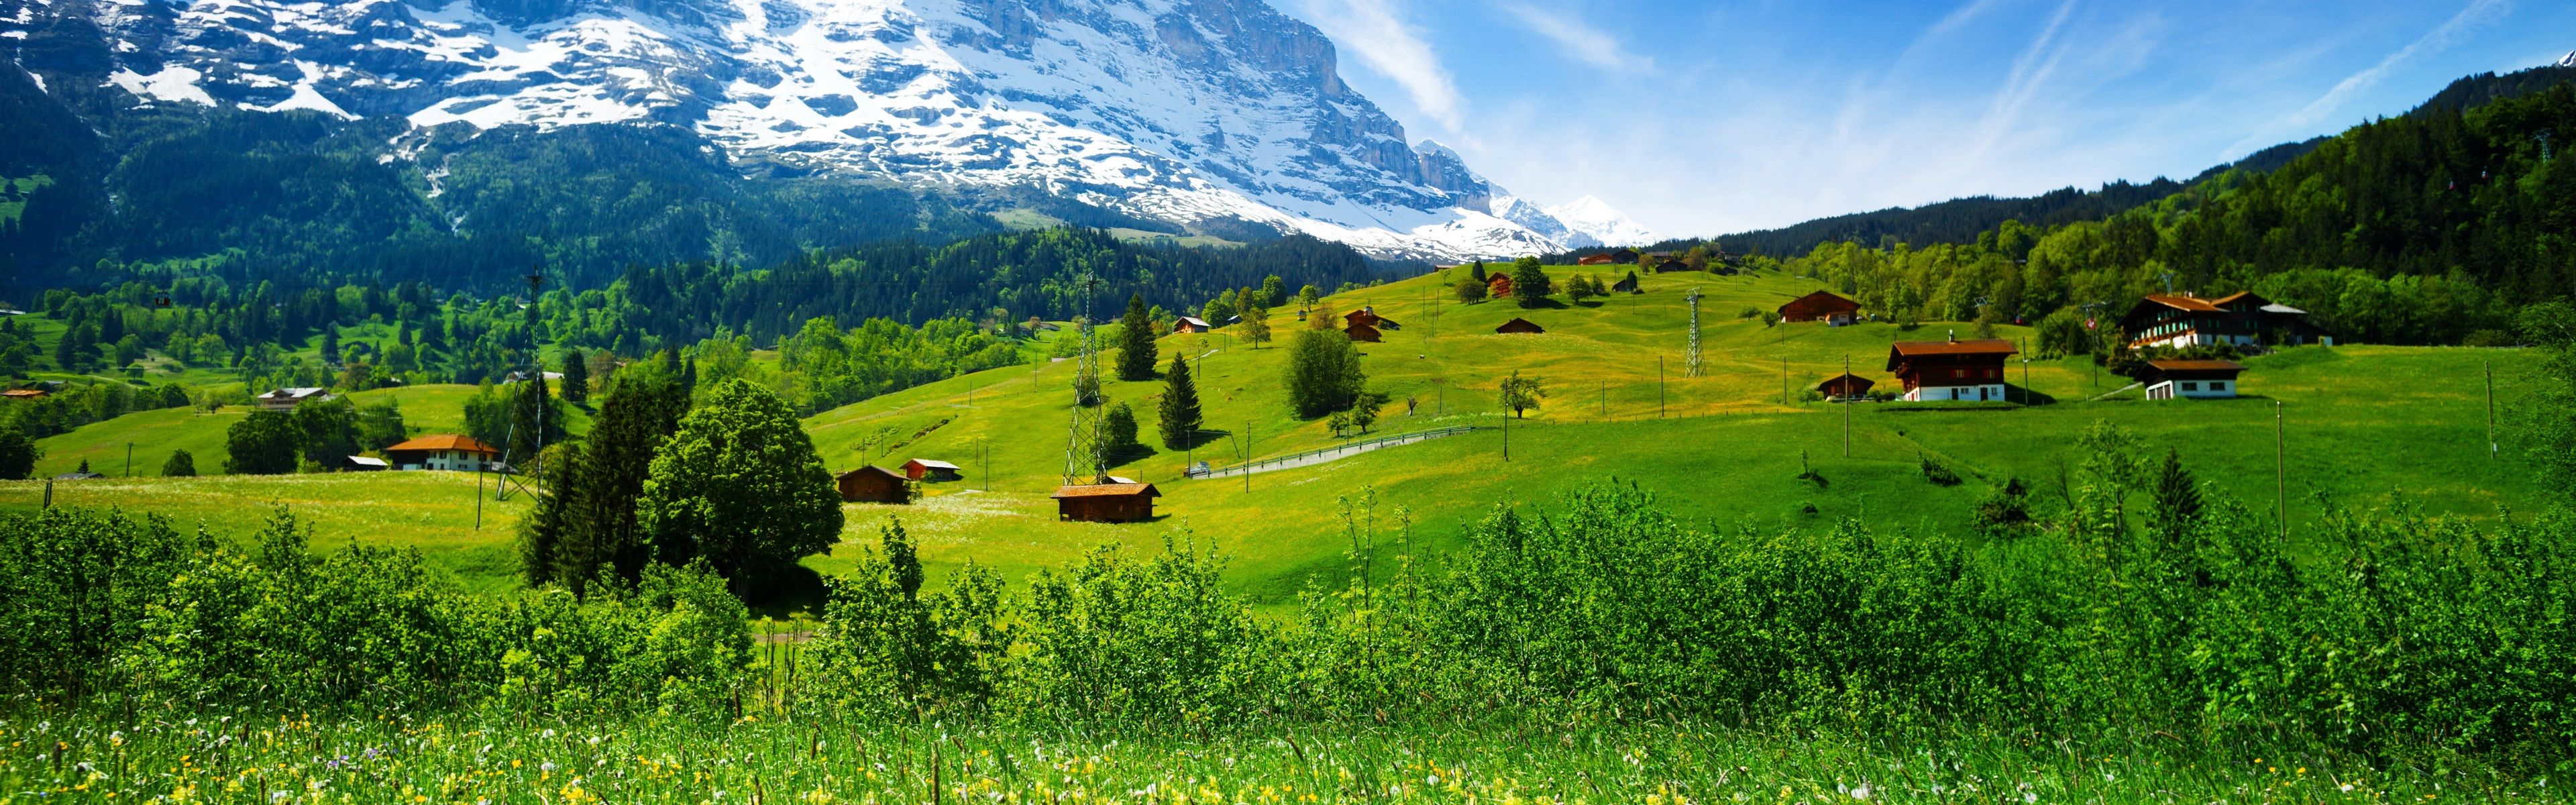 Switzerland, mountains, glacier valley, grass, wildflowers, house